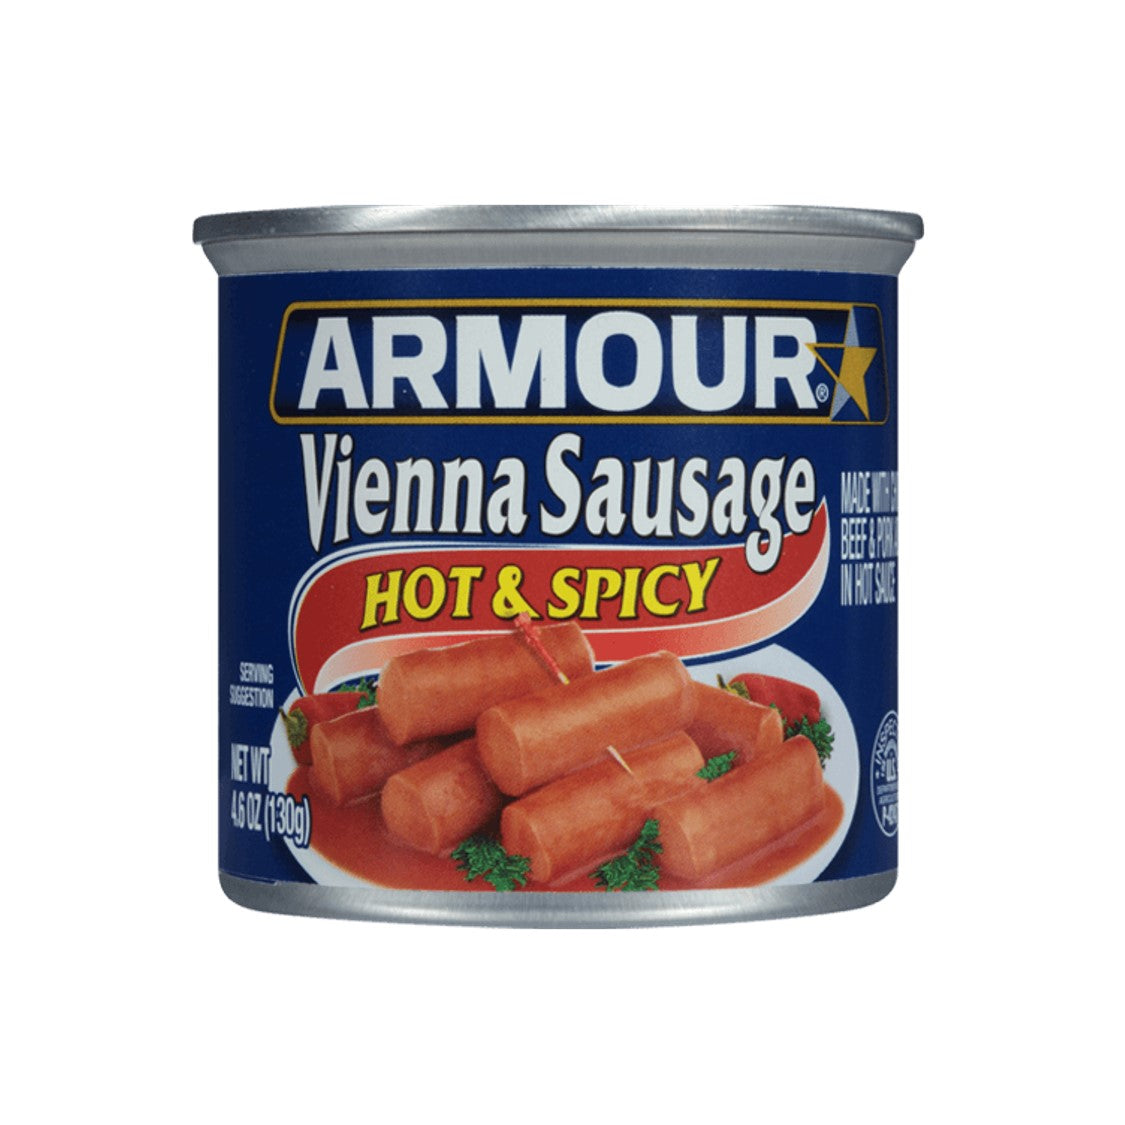 Armour Vienna Sausage Hot & Spicy (130g)